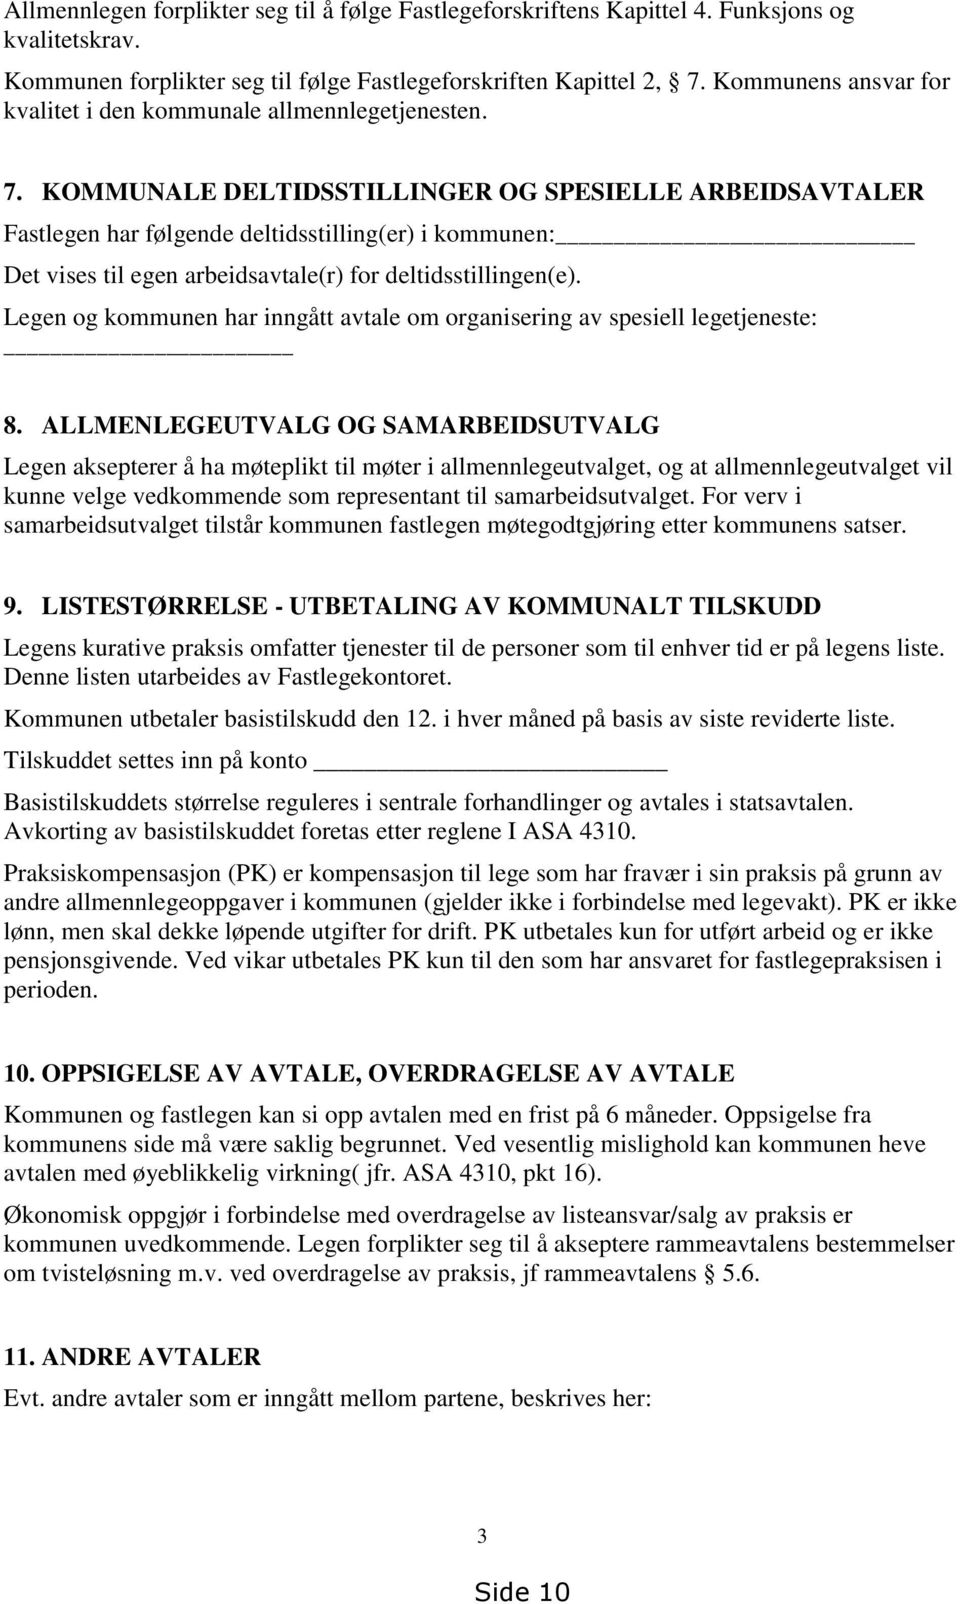 KOMMUNALE DELTIDSSTILLINGER OG SPESIELLE ARBEIDSAVTALER Fastlegen har følgende deltidsstilling(er) i kommunen: Det vises til egen arbeidsavtale(r) for deltidsstillingen(e).